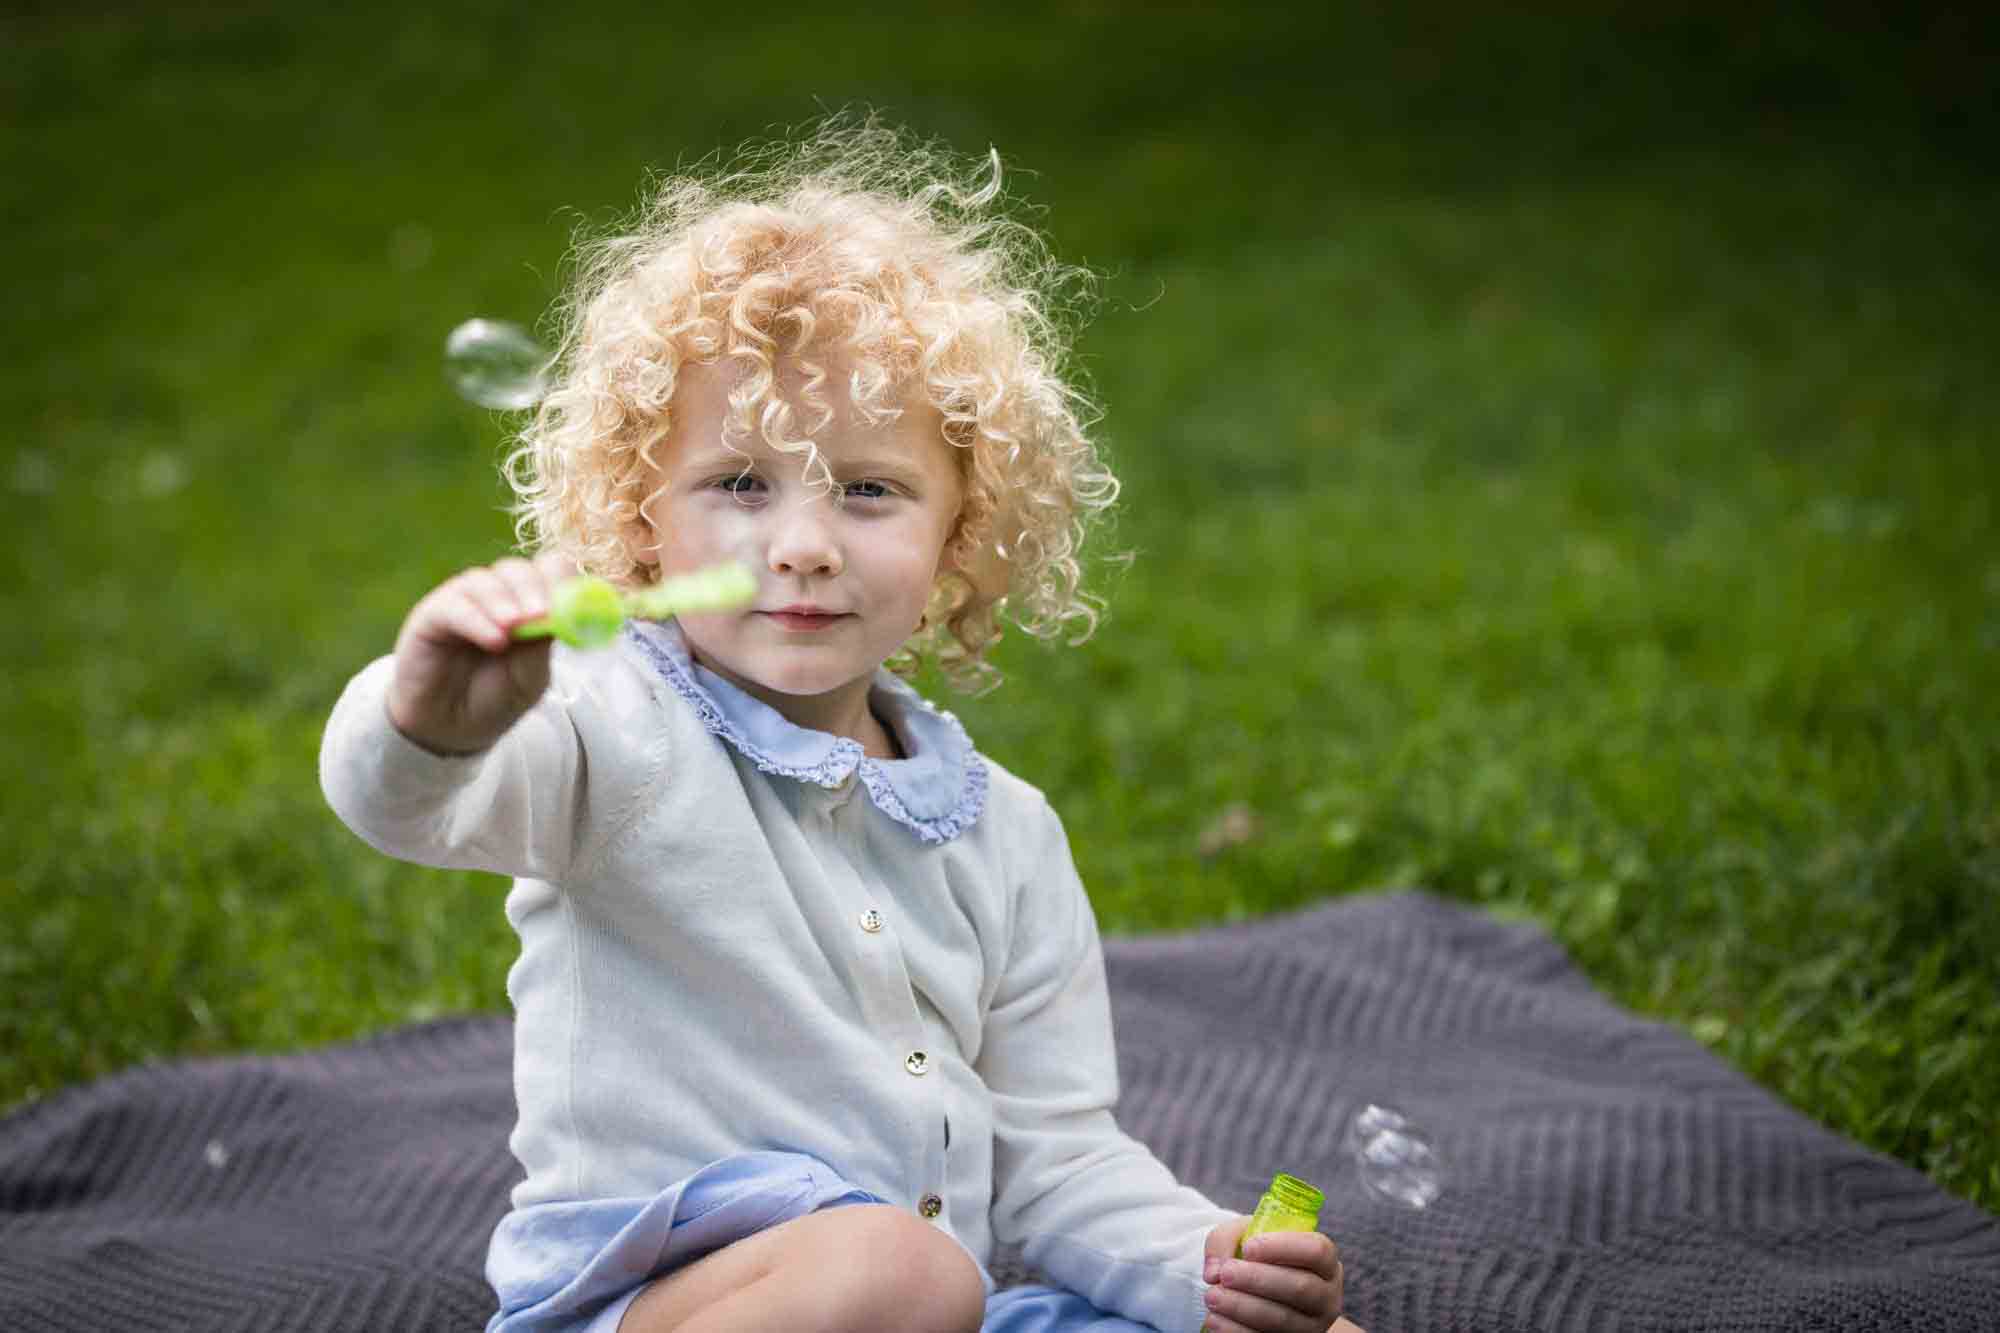 Central Park family portrait of little girl blowing bubbles